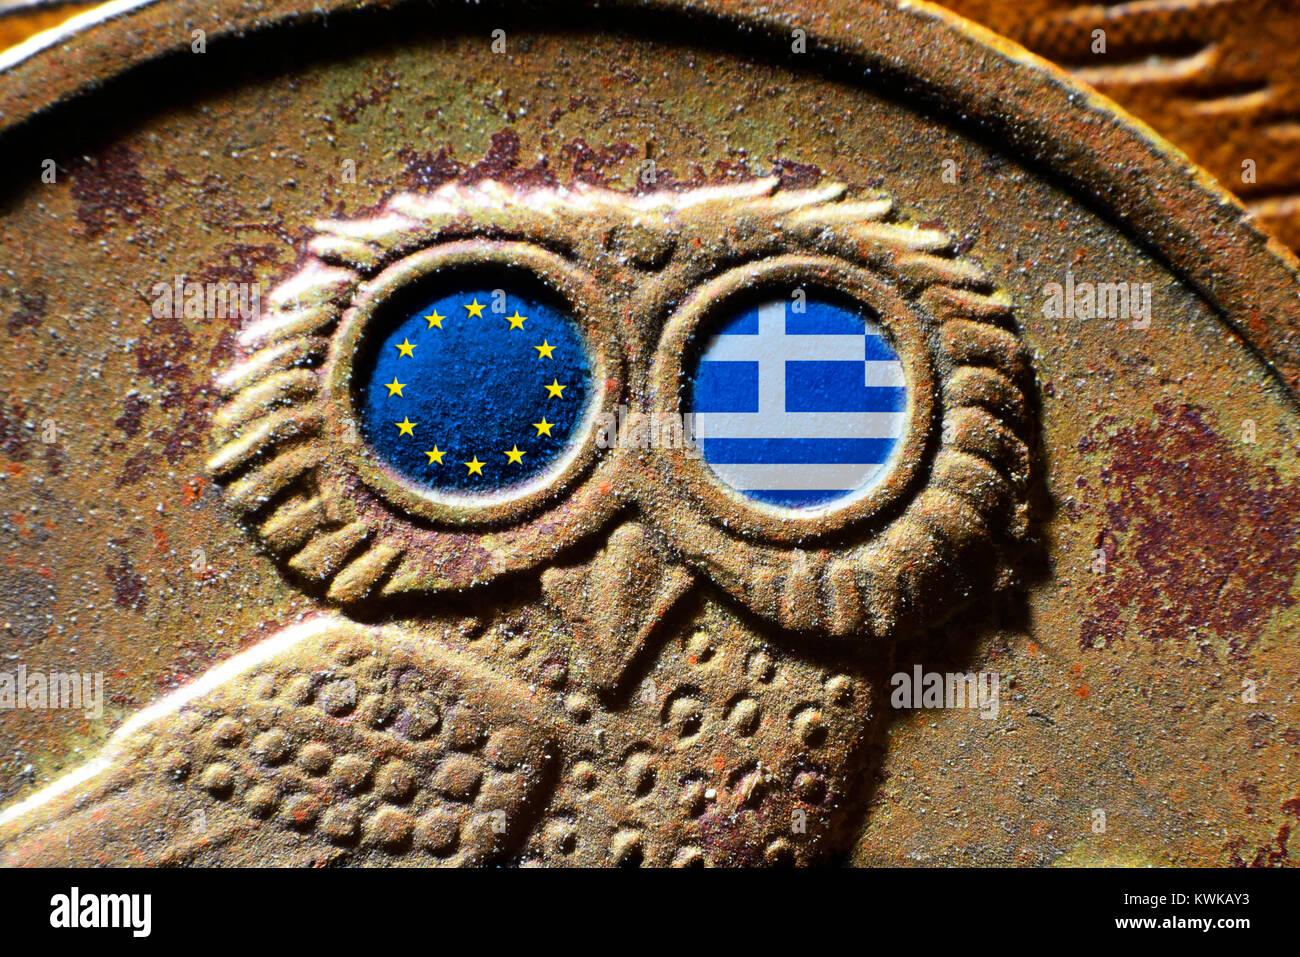 Greek drachm coin with flags of the EU and Greece, Griechische Drachme-M?nze mit Fahnen von EU und Griechenland Stock Photo